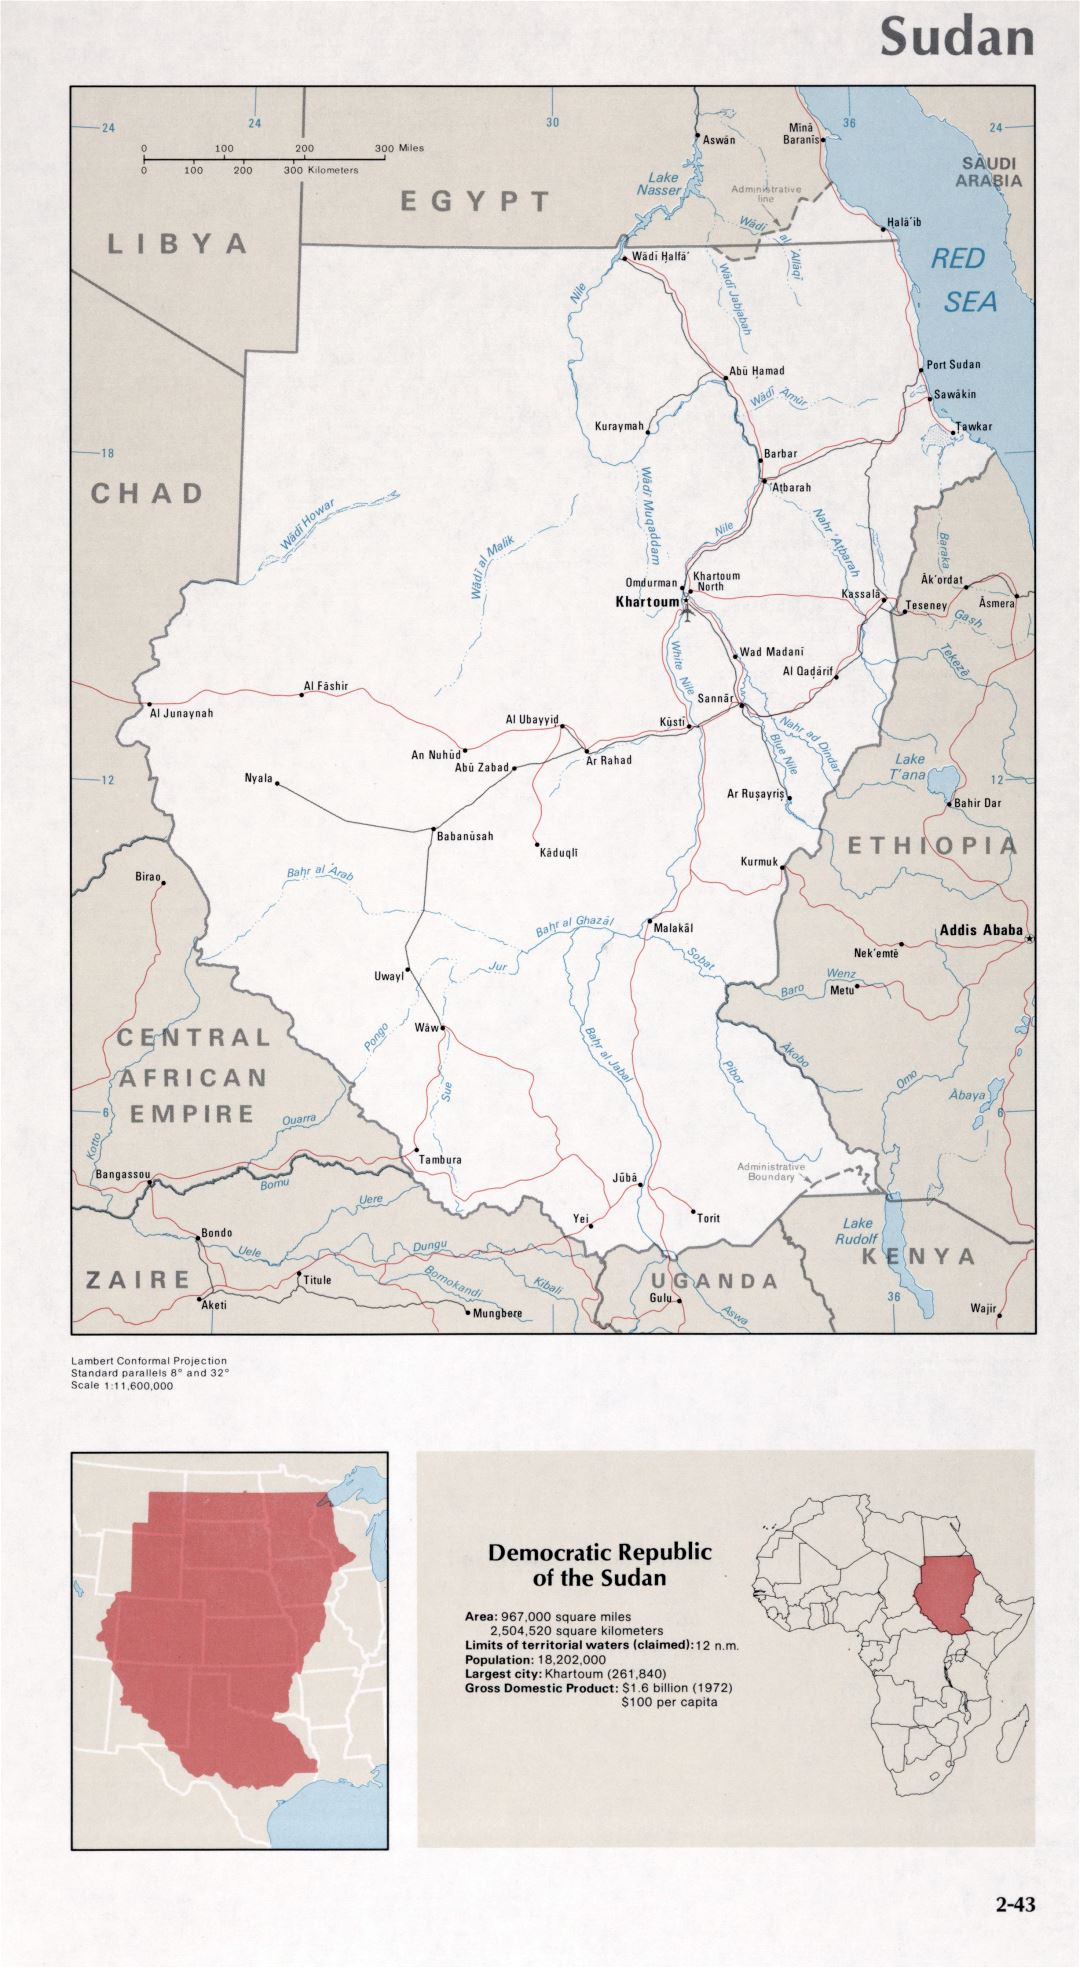 Map of Sudan (2-43)